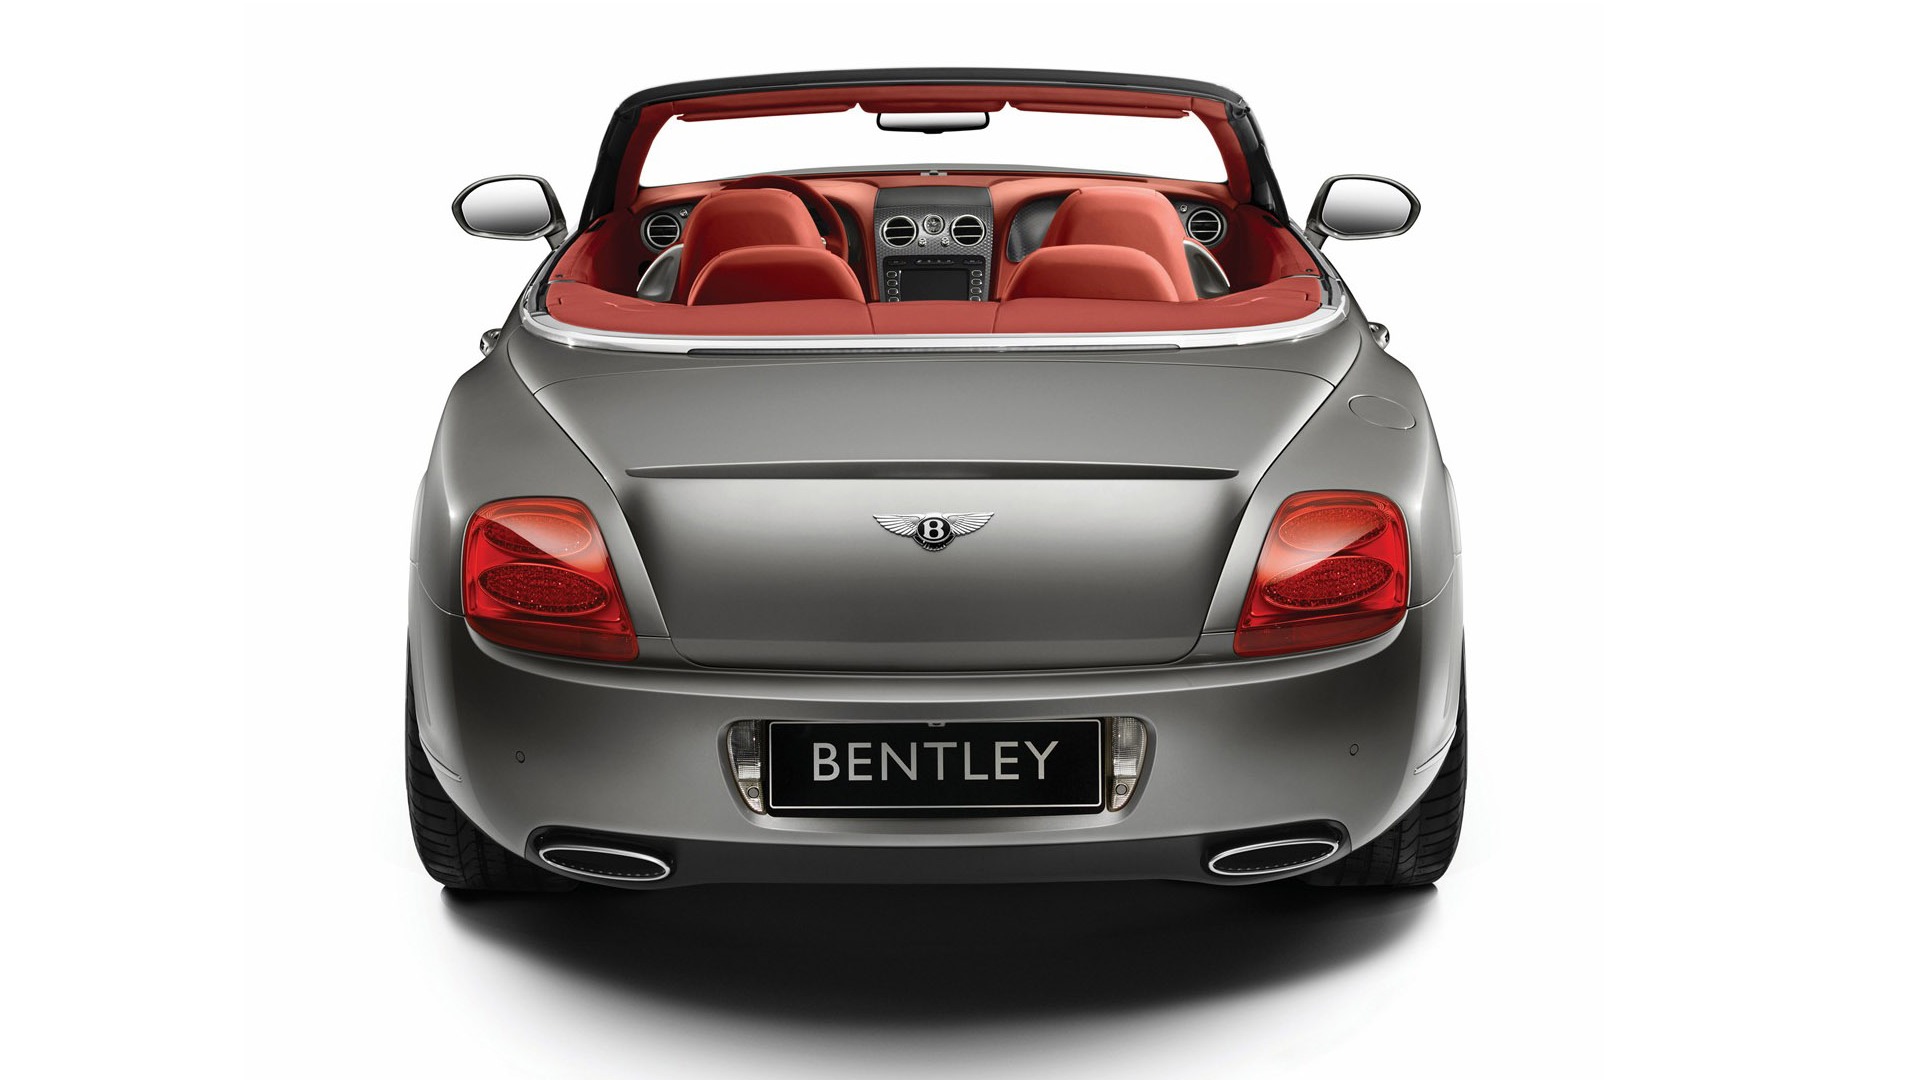 Bentley 宾利 壁纸专辑(一)19 - 1920x1080